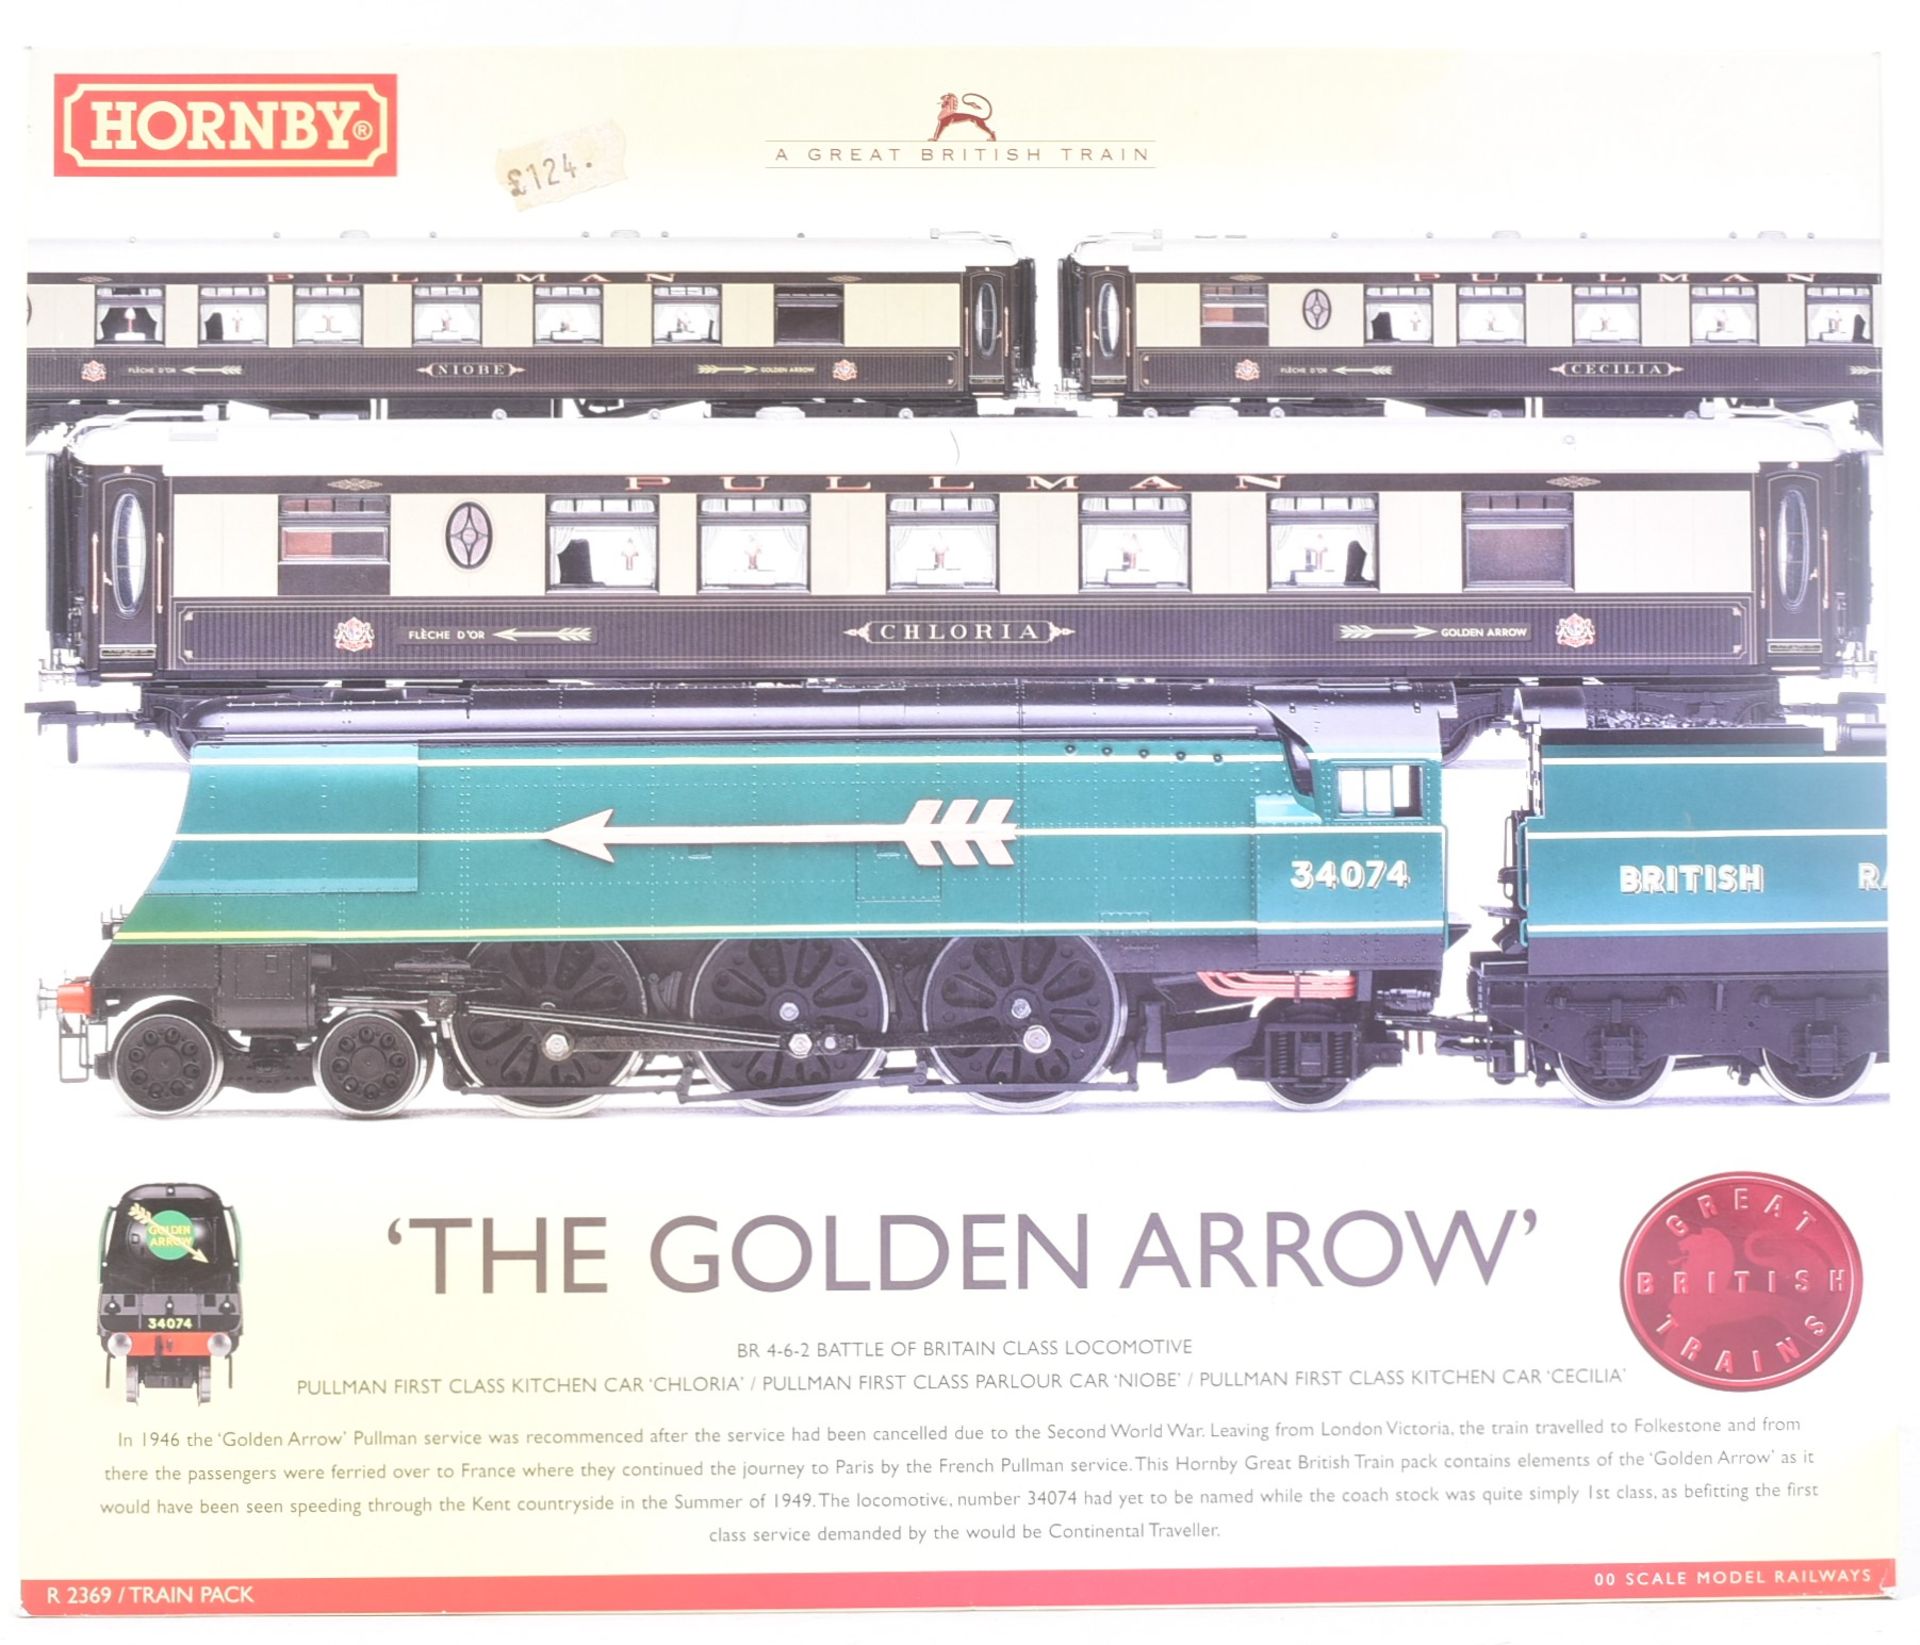 MODEL RAILWAY - HORNBY OO GAUGE GOLDEN ARROW LOCOMOTIVE TRAIN SET